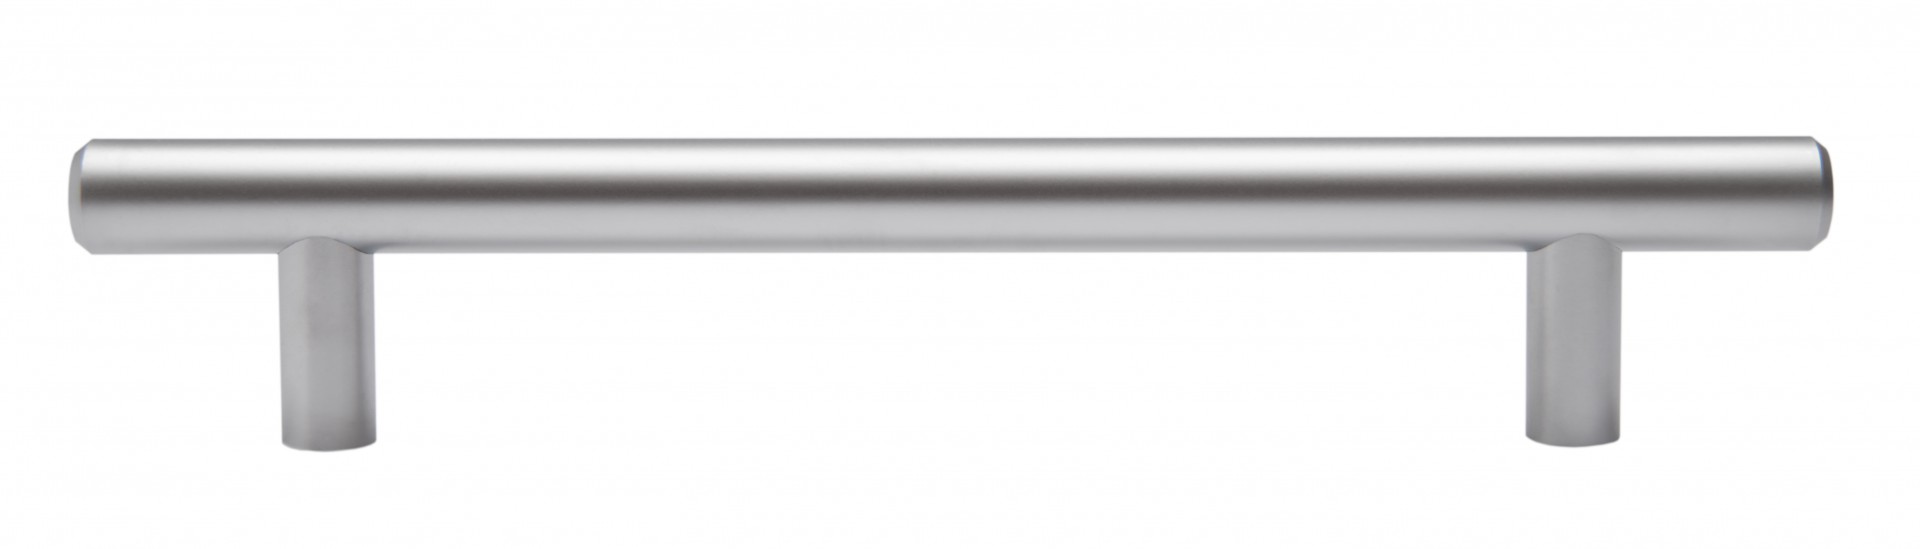 Ручка мебельная рейлинг 224мм сатин RR002SC.5/224 Boyard / 719739-2 / оптом и в розницу / мебельная фурнитура "ЛАВР"